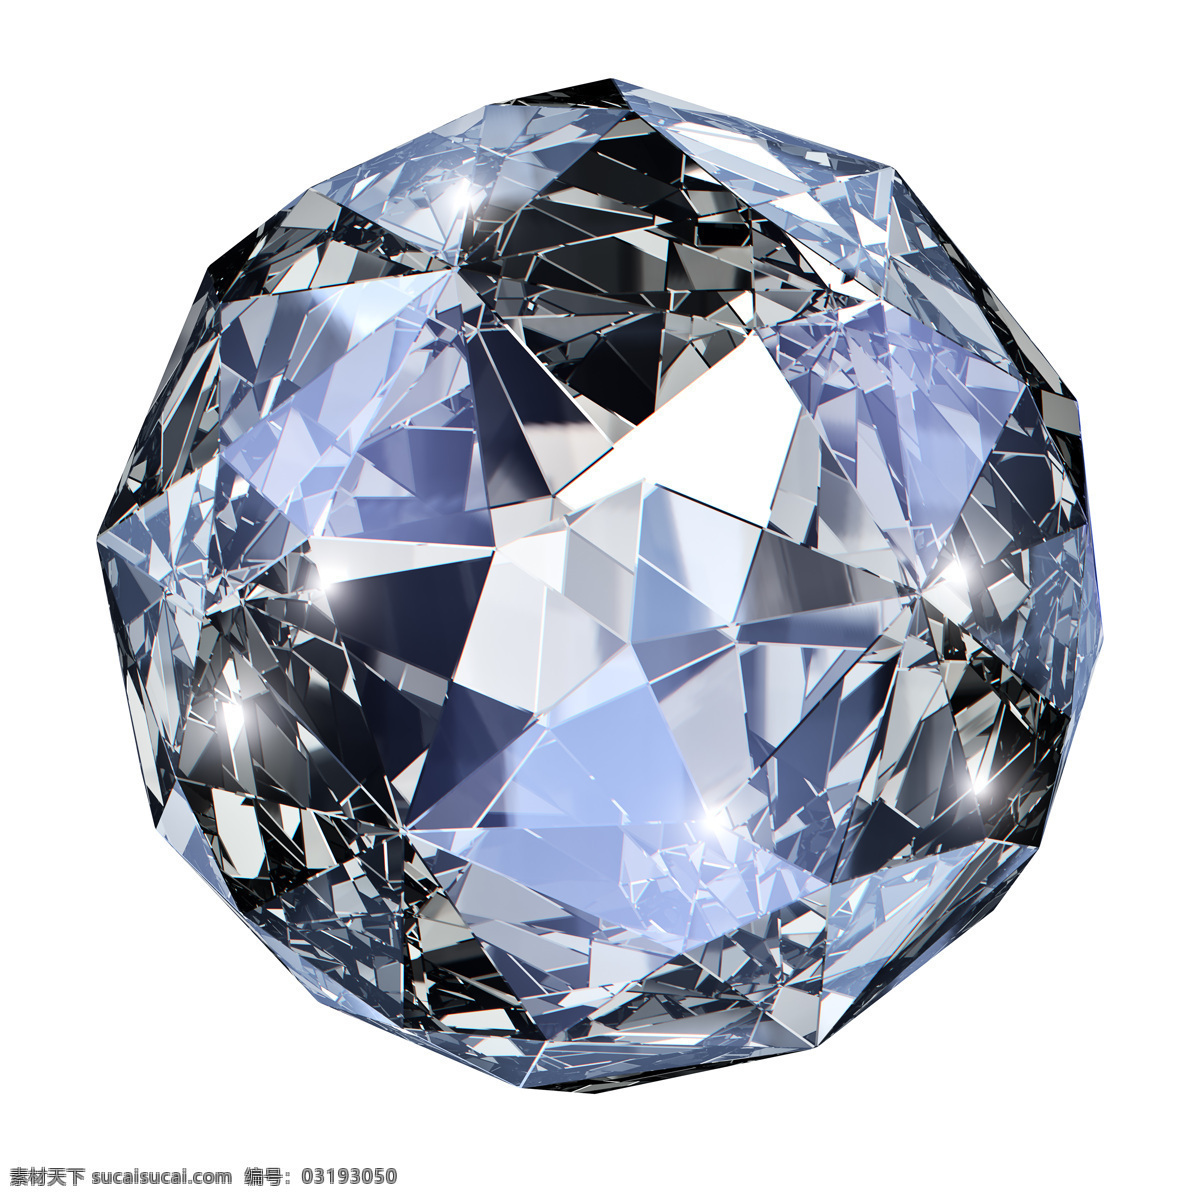 蓝色钻石首饰 蓝色钻石 宝石 珠宝首饰 珠宝服饰 生活百科 白色